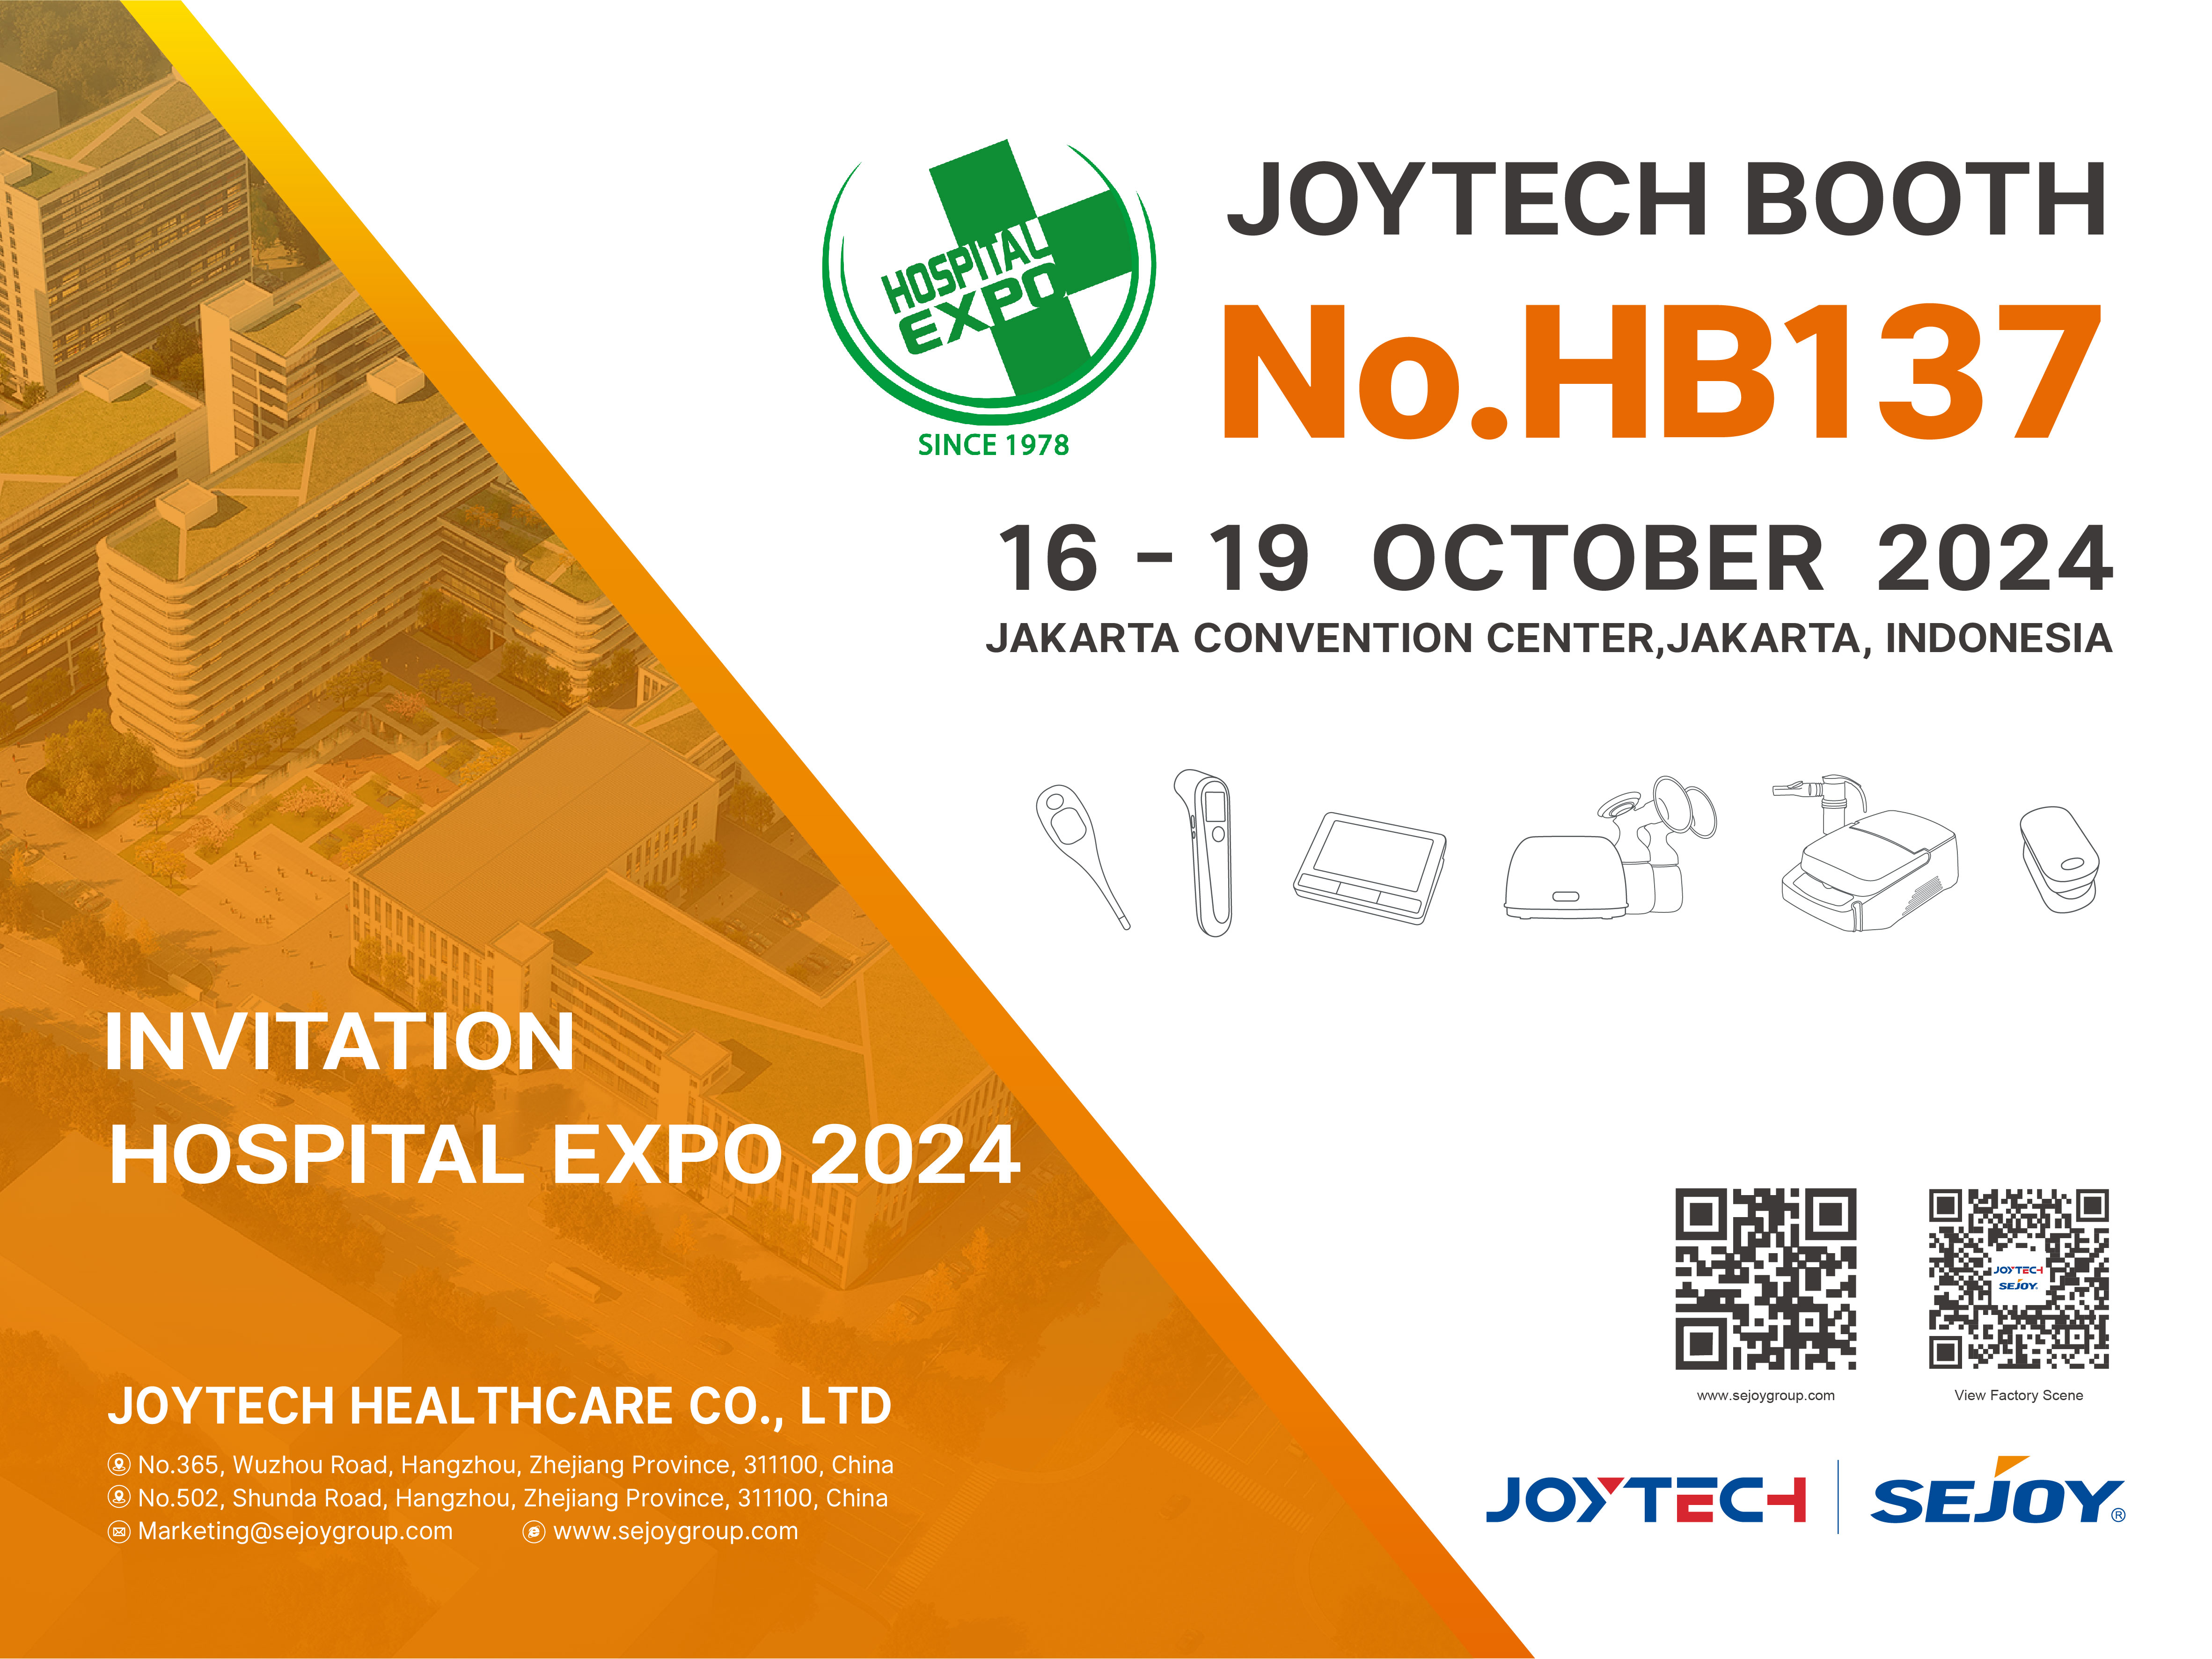 Invitation to the Hospital Expo 2024 in Jakarta